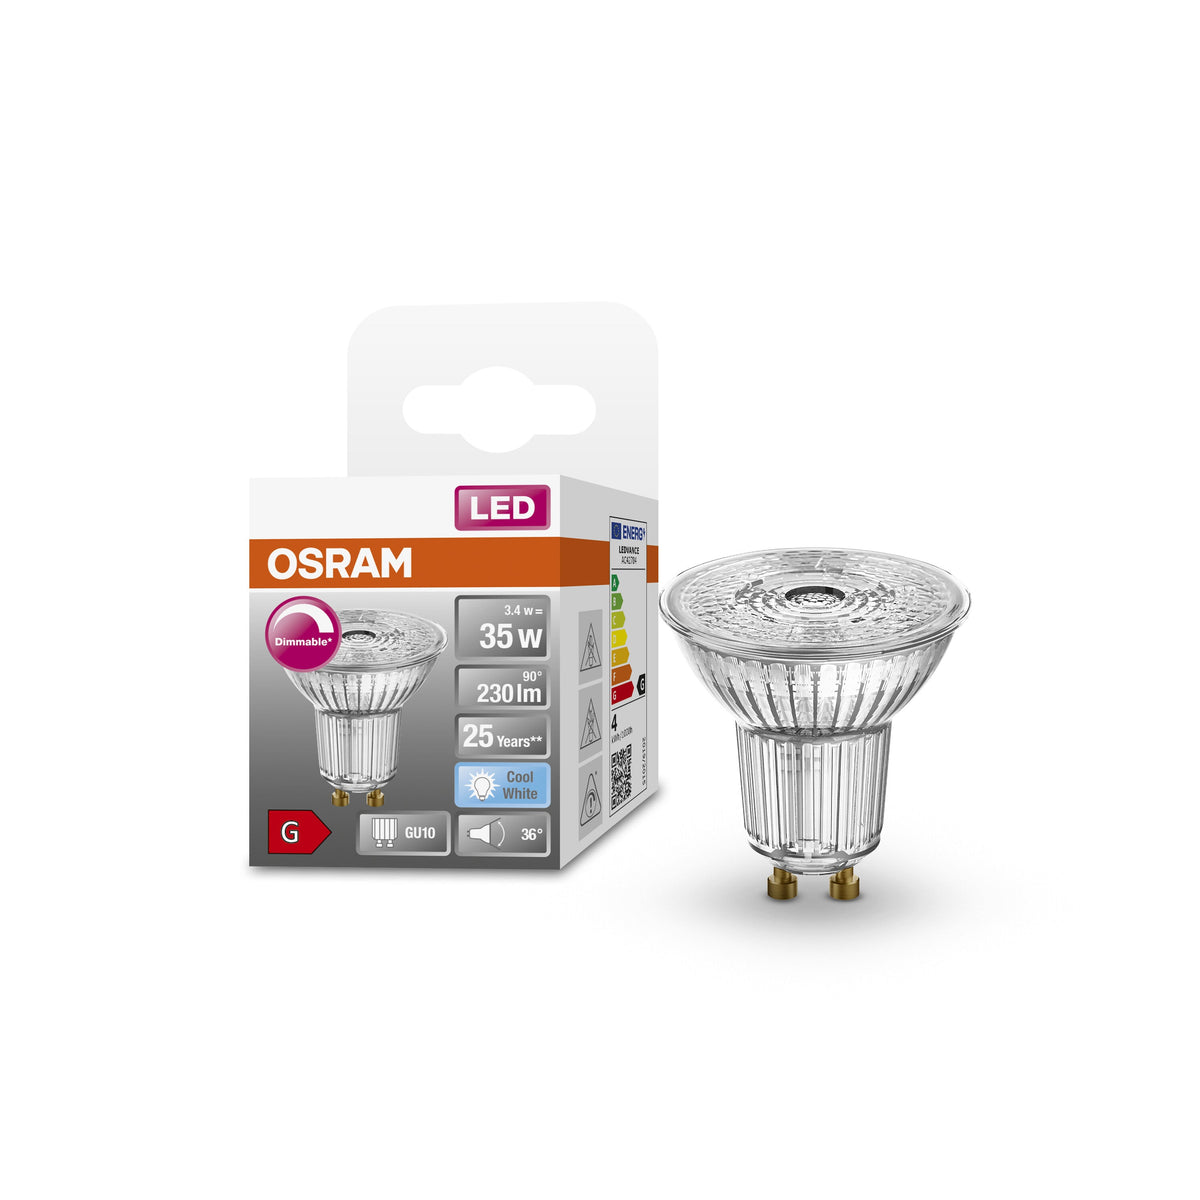 Lampada con riflettore LED OSRAM PAR16 dimmerabile con attacco GU10, bianco freddo (4000K), spot in vetro, 3,7 W, ricambio per lampada con riflettore da 35 W, LED SUPERSTAR PAR16